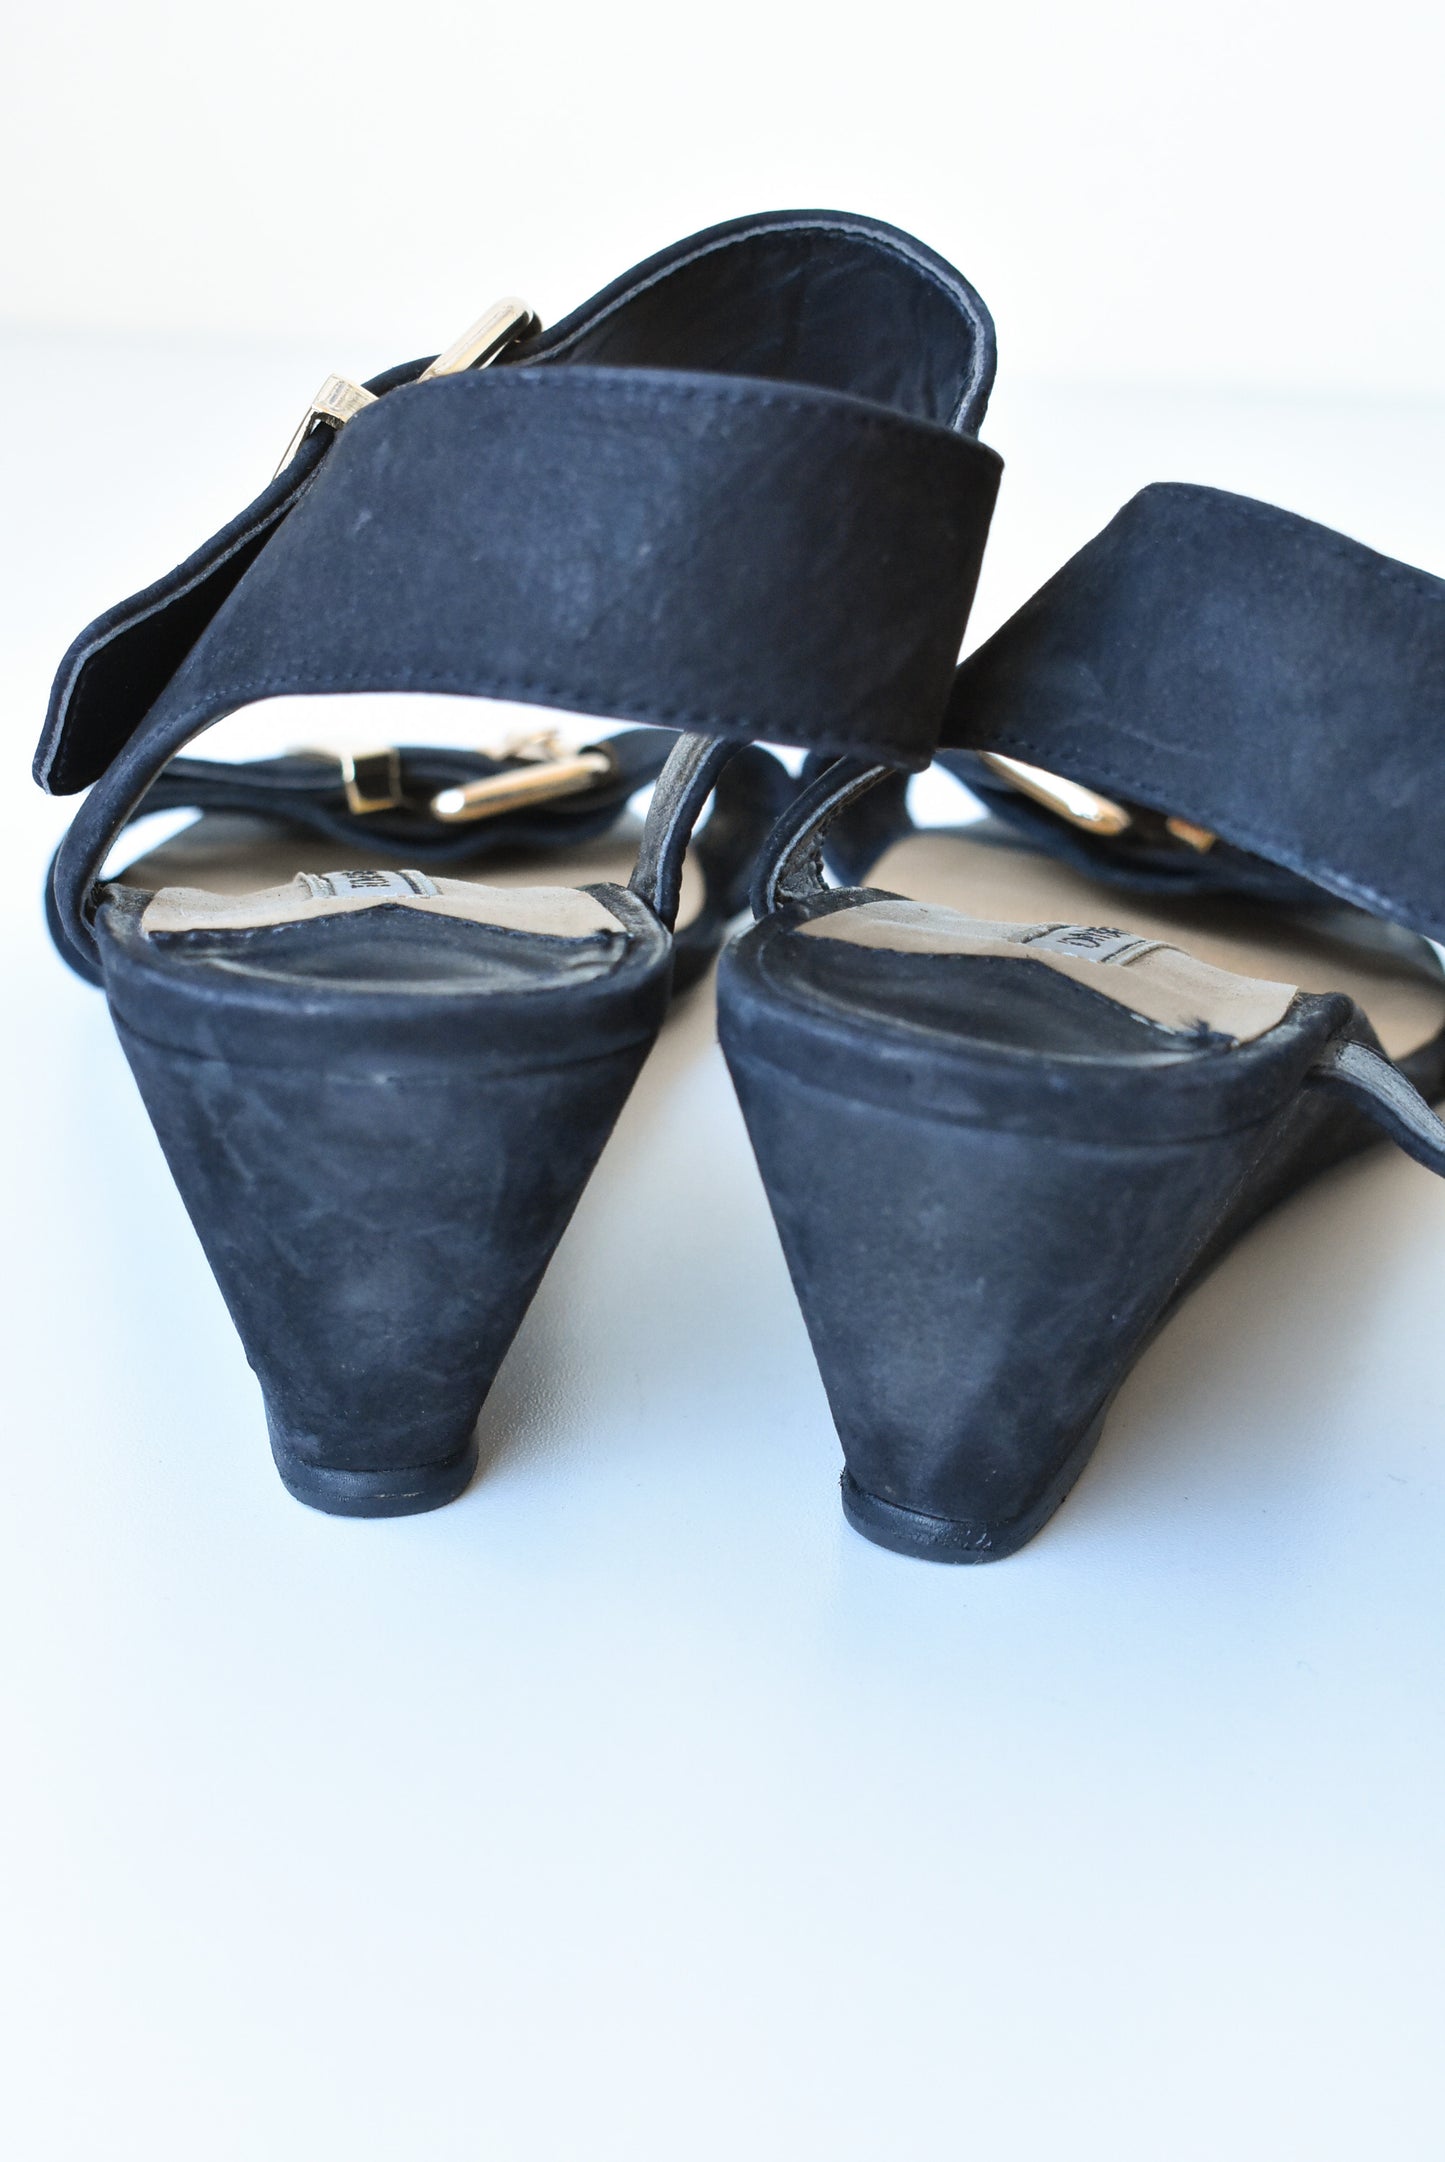 Tony Bianco sandals, 7.5